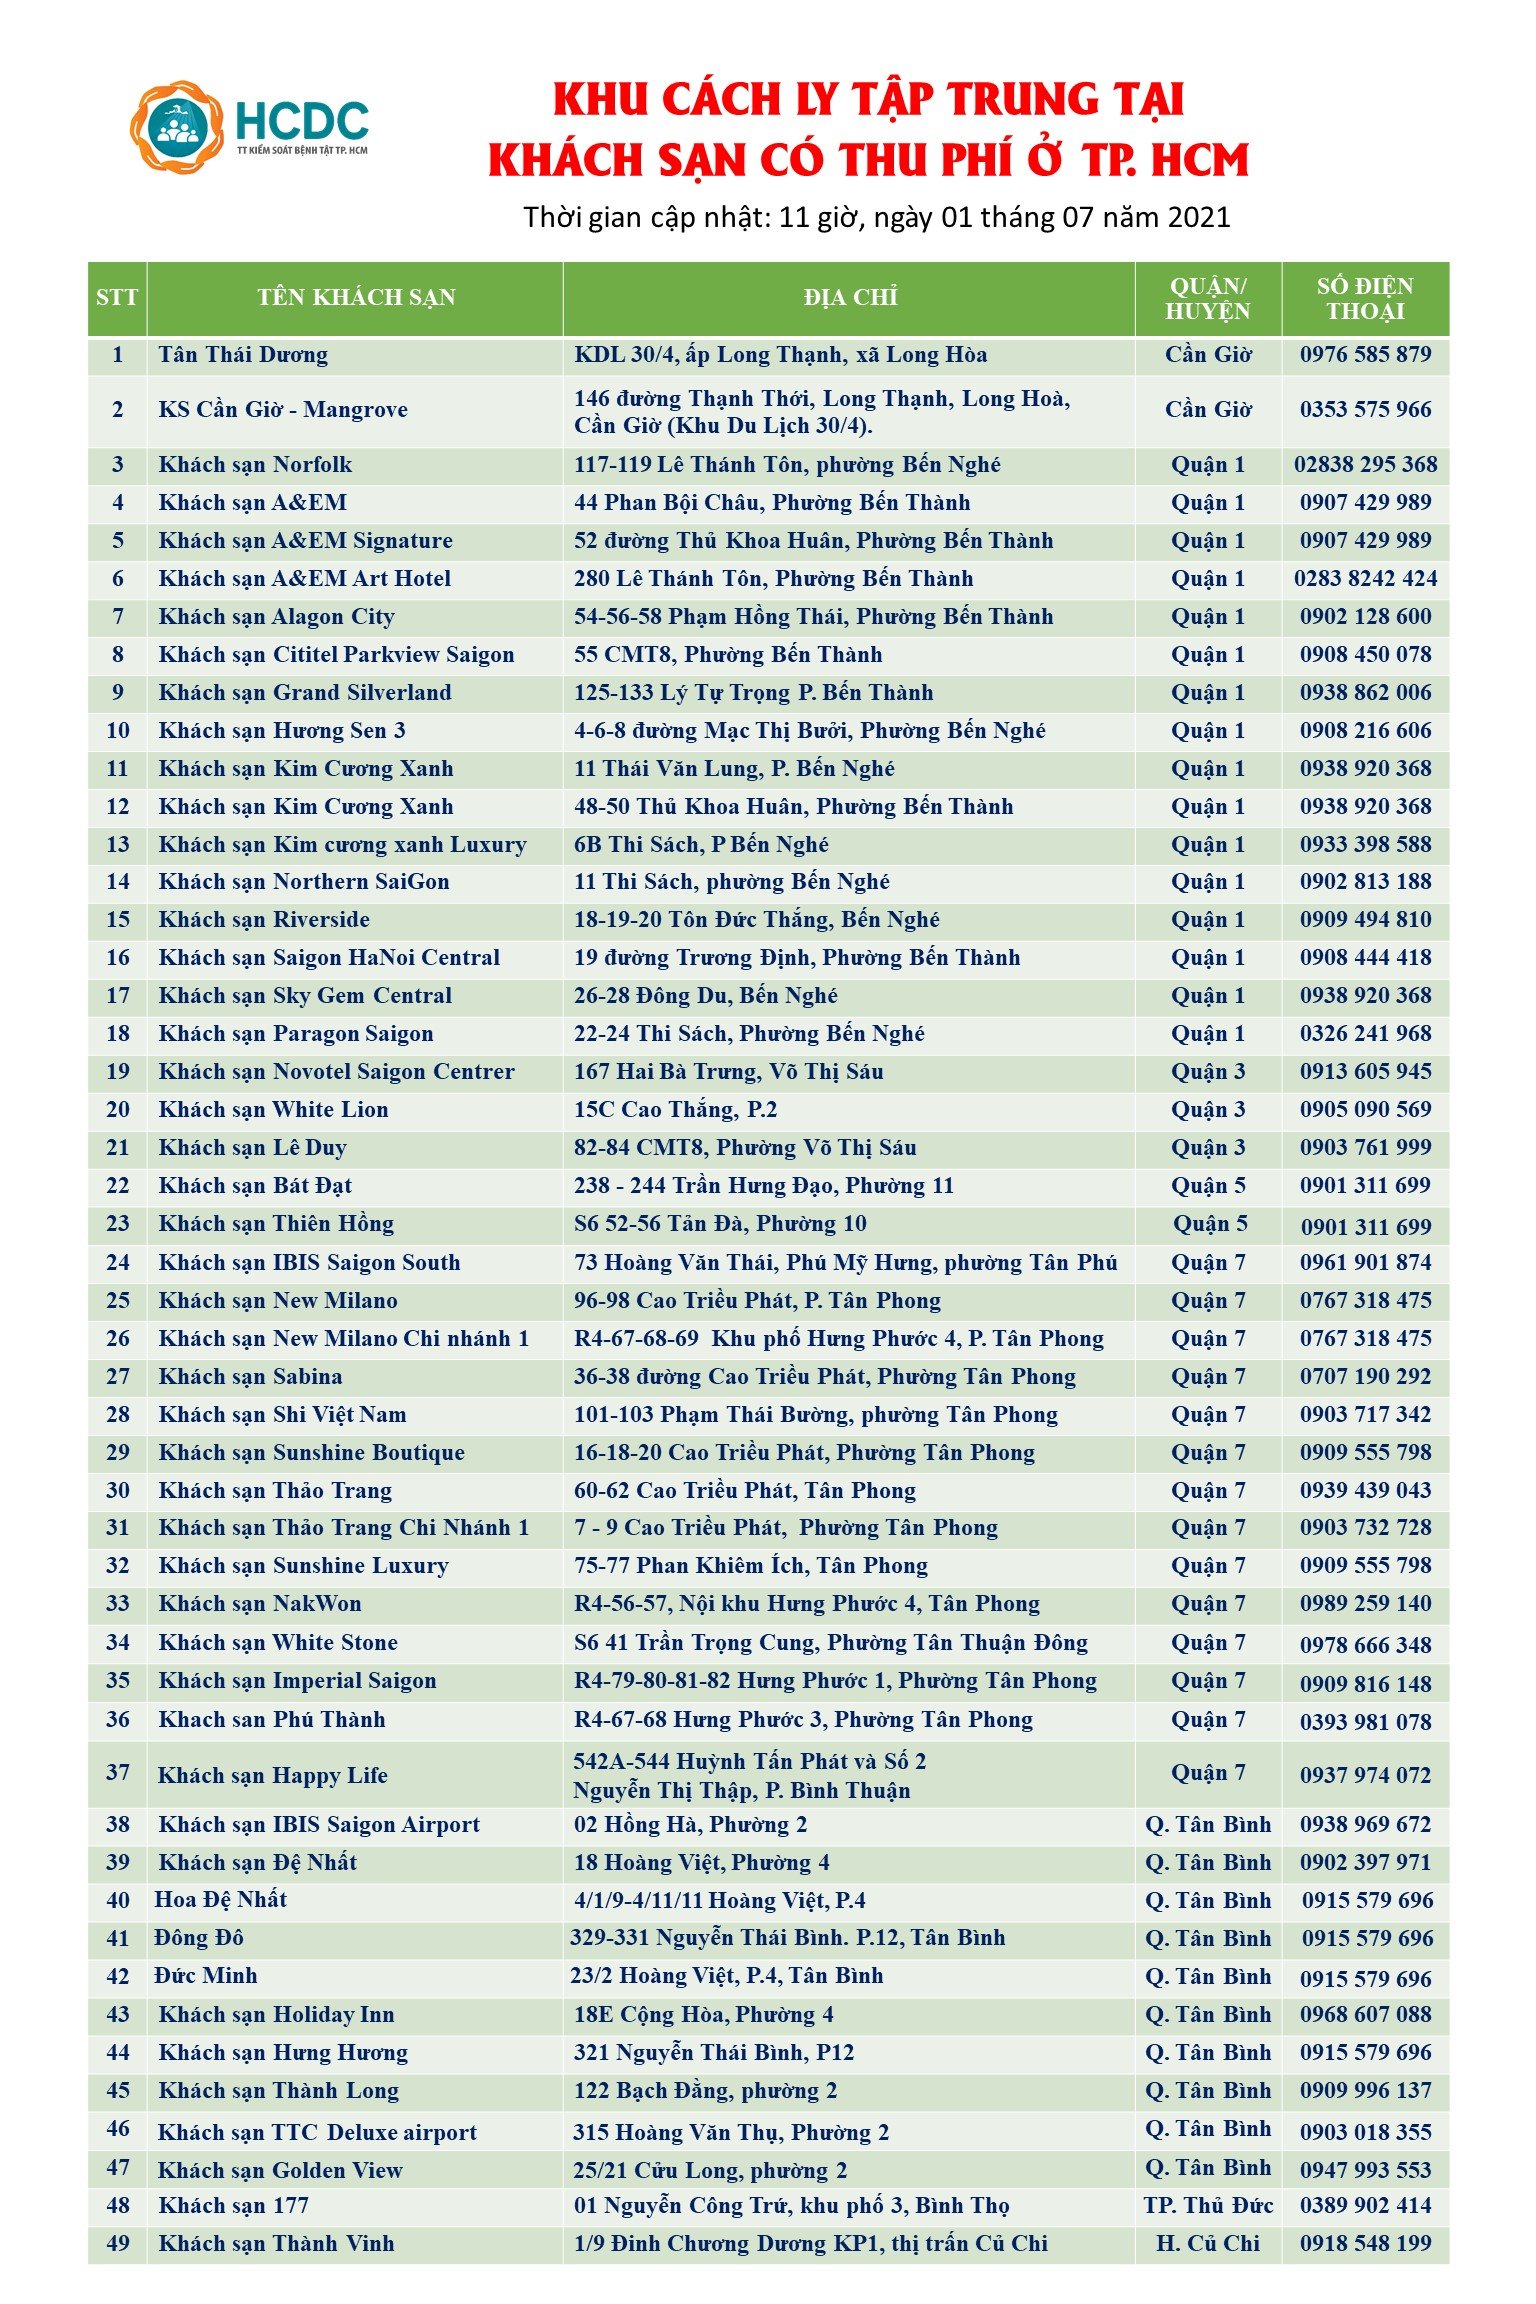 Danh sách các khách sạn cách ly thu phí trên địa bàn TPHCM